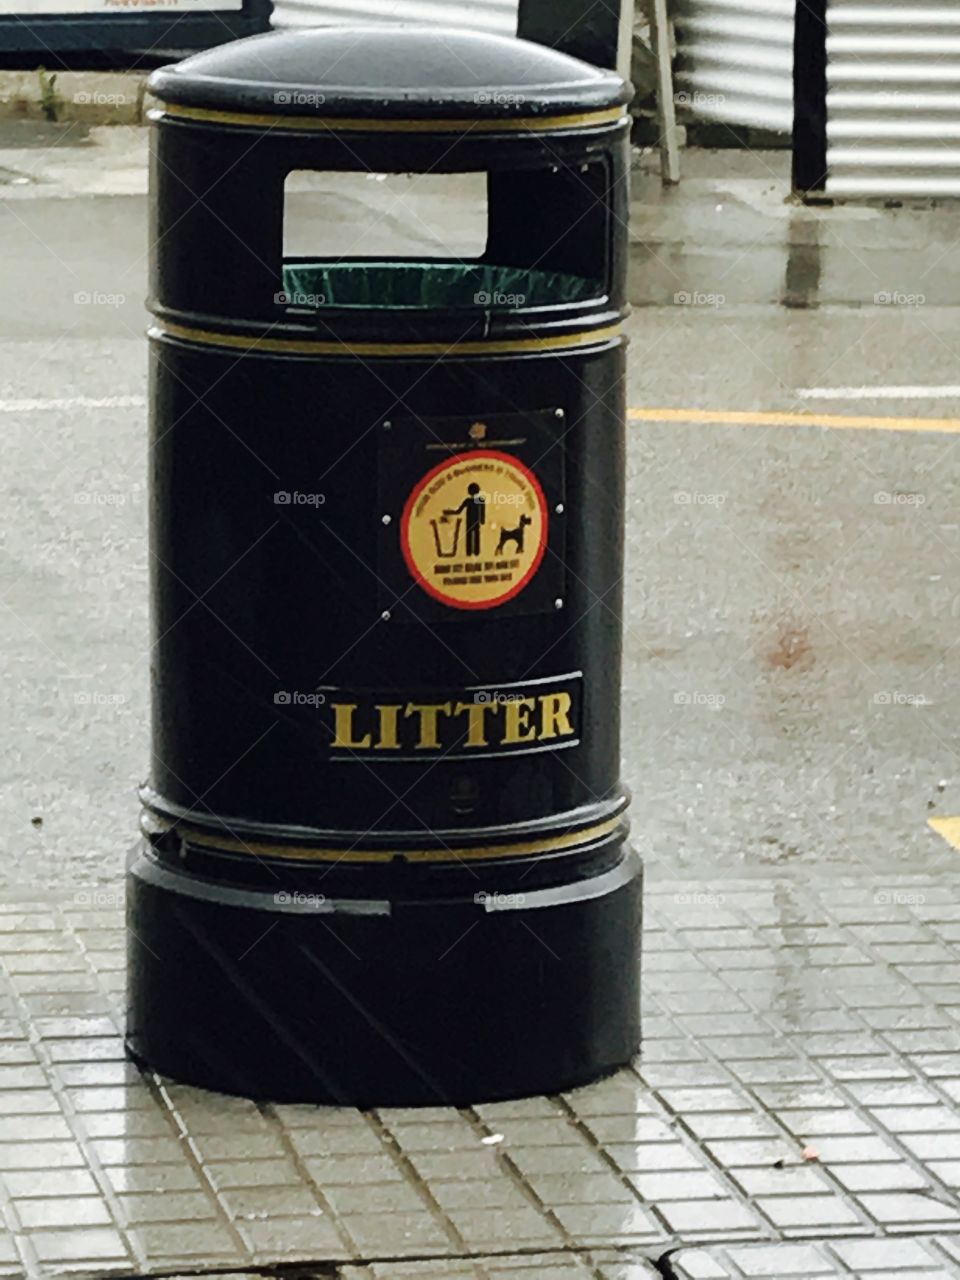 Litter-bins-garbage-hygiene 